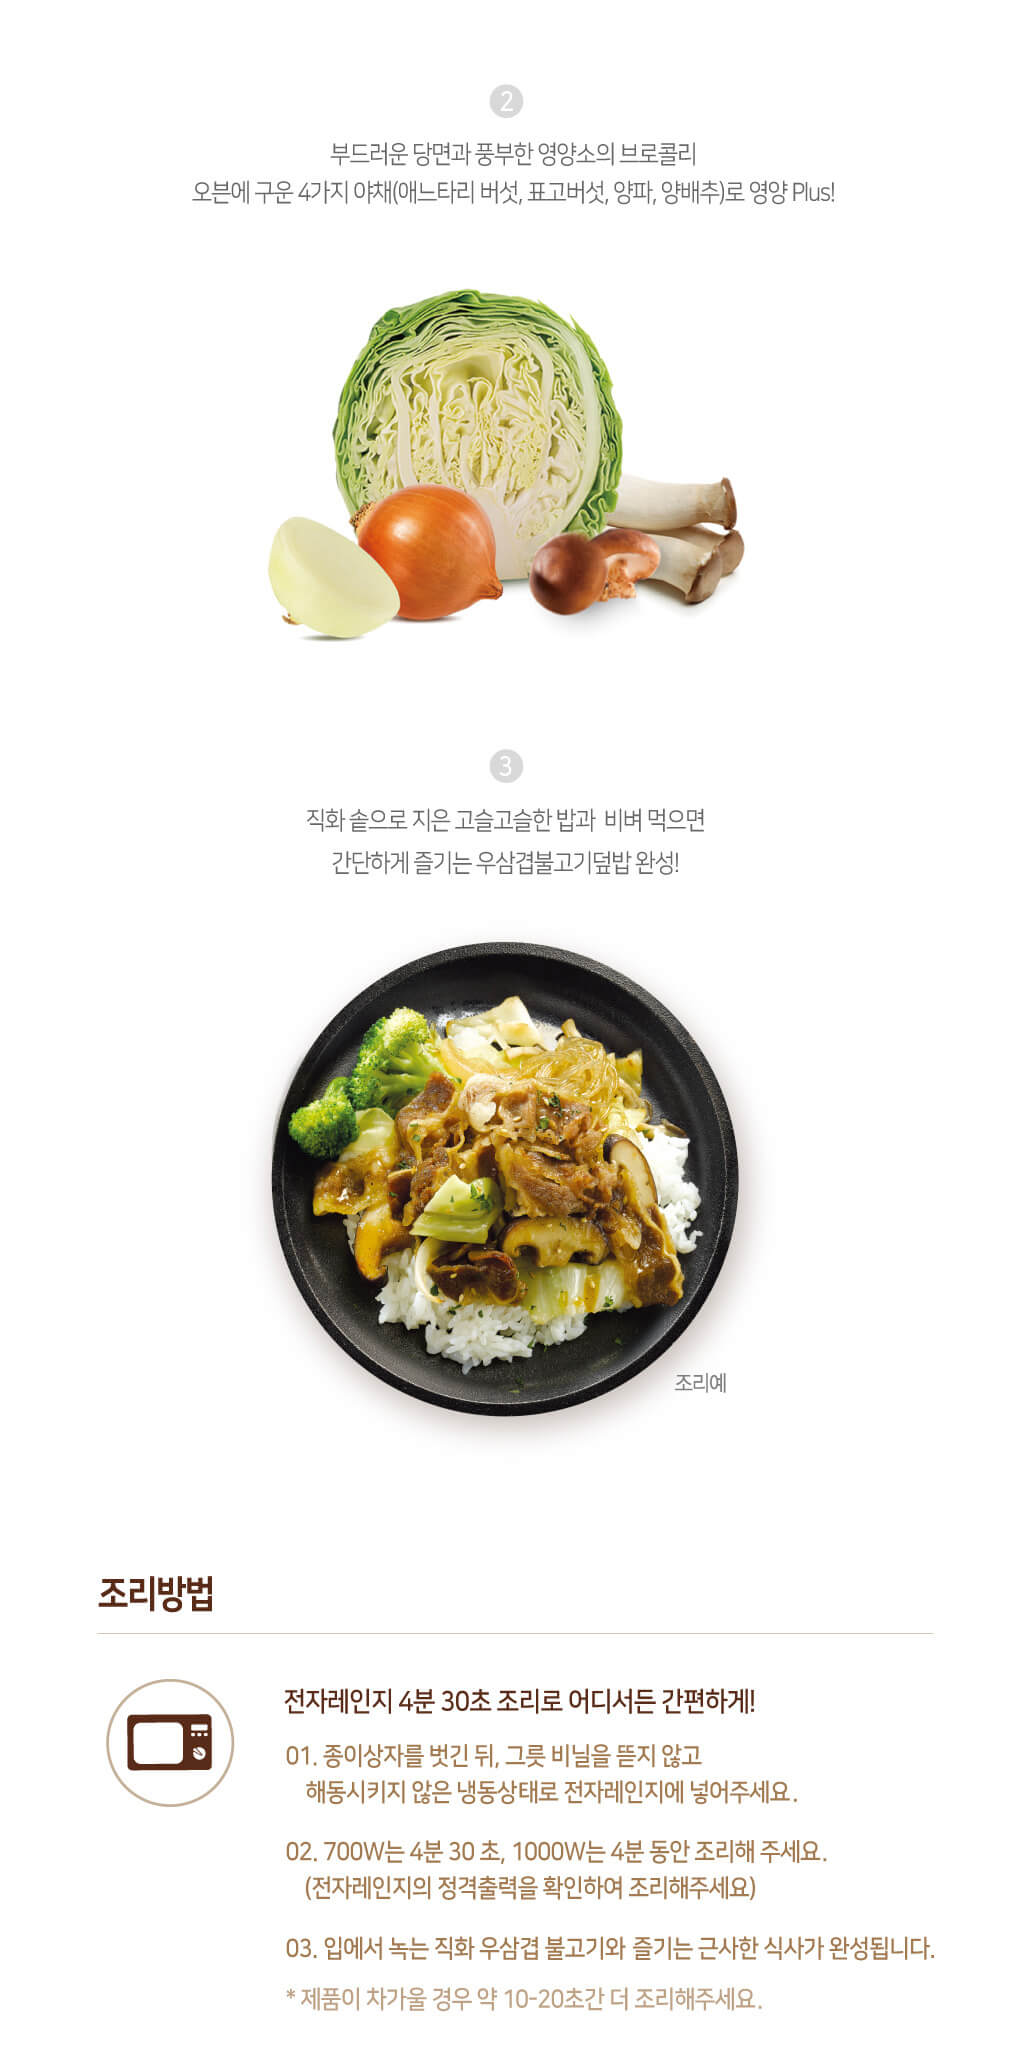 韓國食品-[Ourhome] Onthego 牛肉烤肉飯 290g